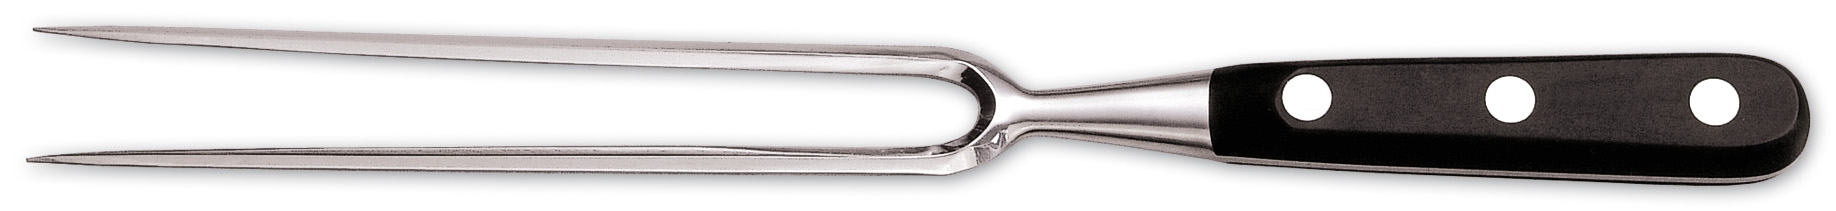 Stekegaffel 18cm Arcos / Carving fork